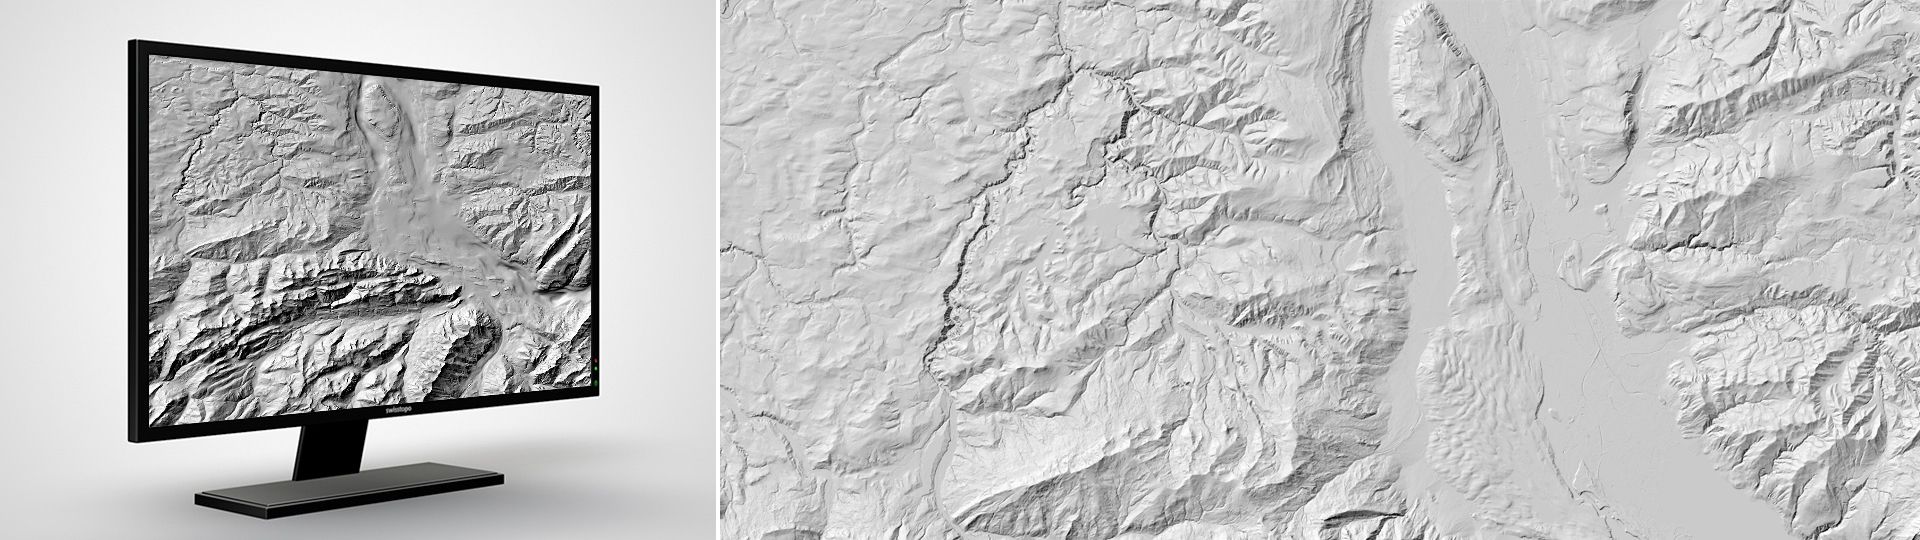 Modello di altitudine del tetto del substrato roccioso: il modello di altitudine del tetto del substrato roccioso digitale del bacino della Molassa e nelle grandi vallate alpine